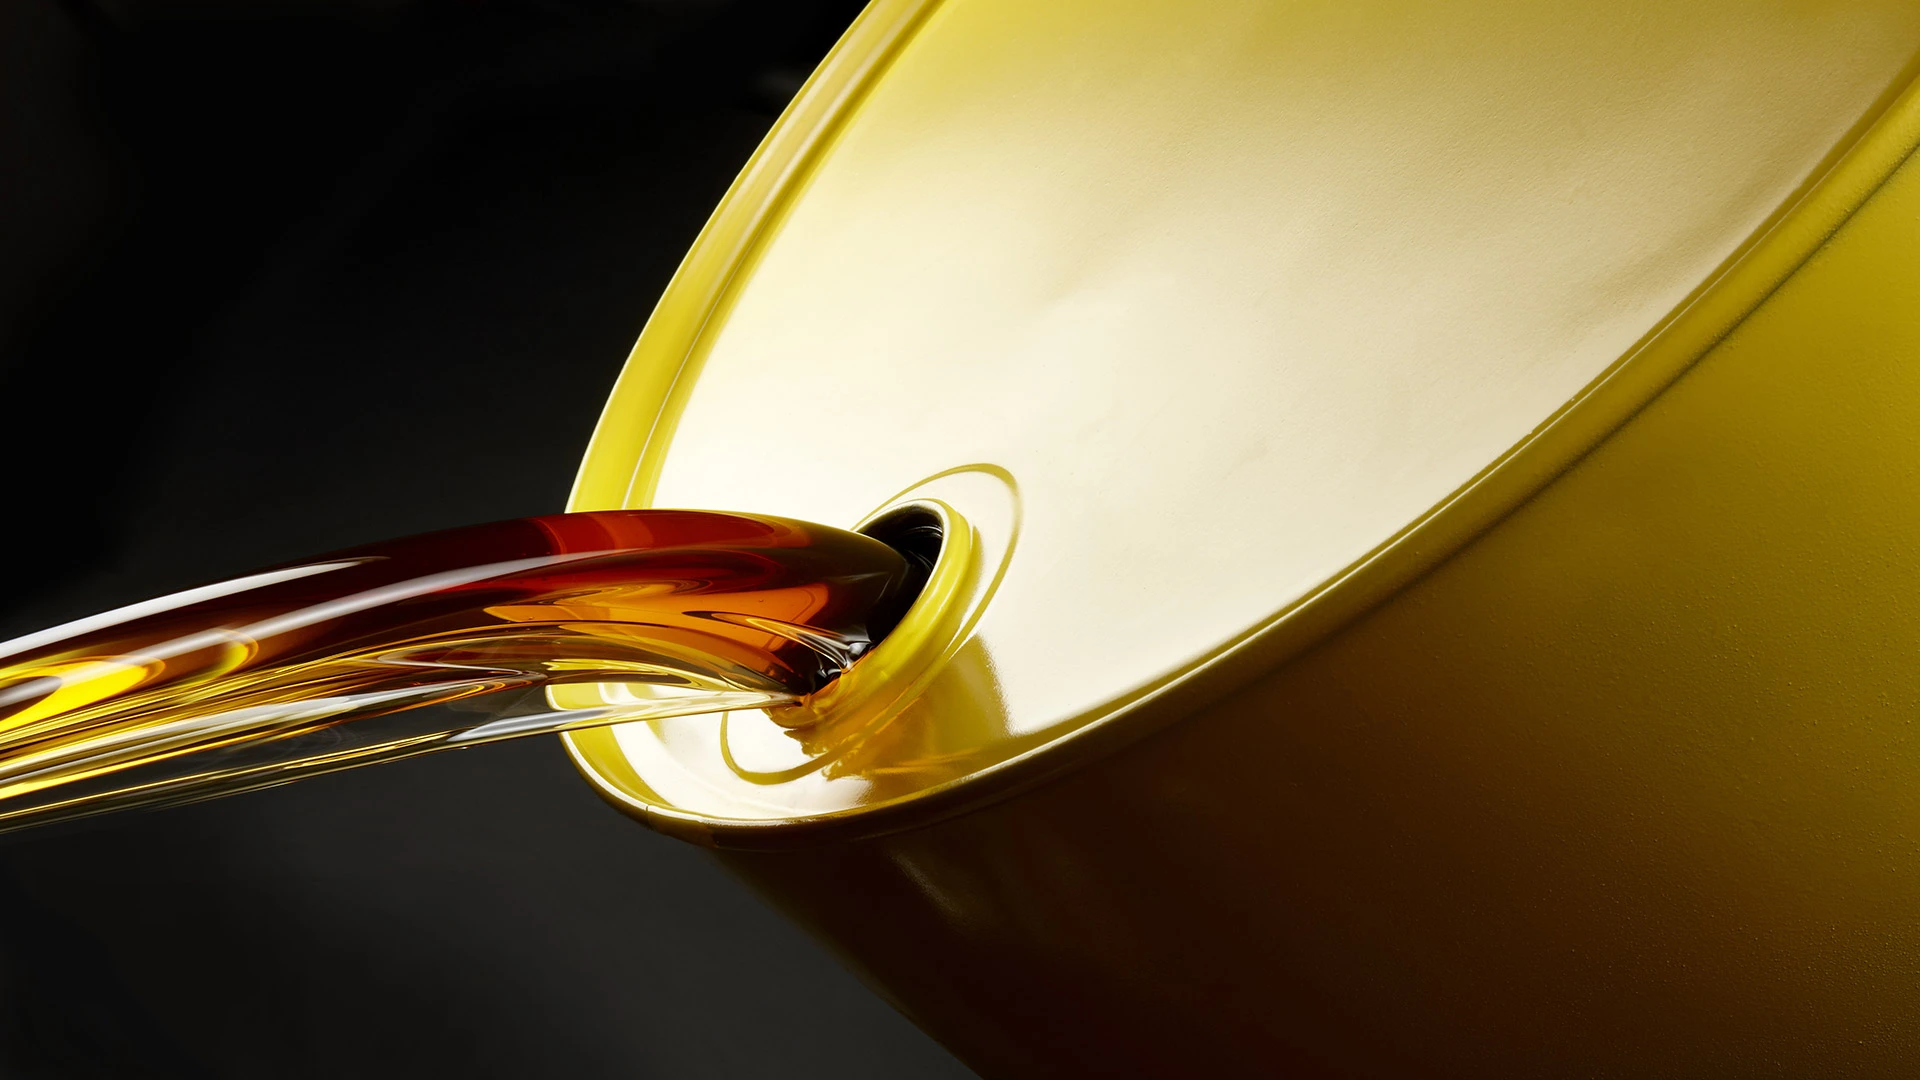 Diese Nachricht treibt gerade den Ölpreis nach oben – Wie geht es jetzt weiter? (Foto: Jim Barber/Shutterstock)